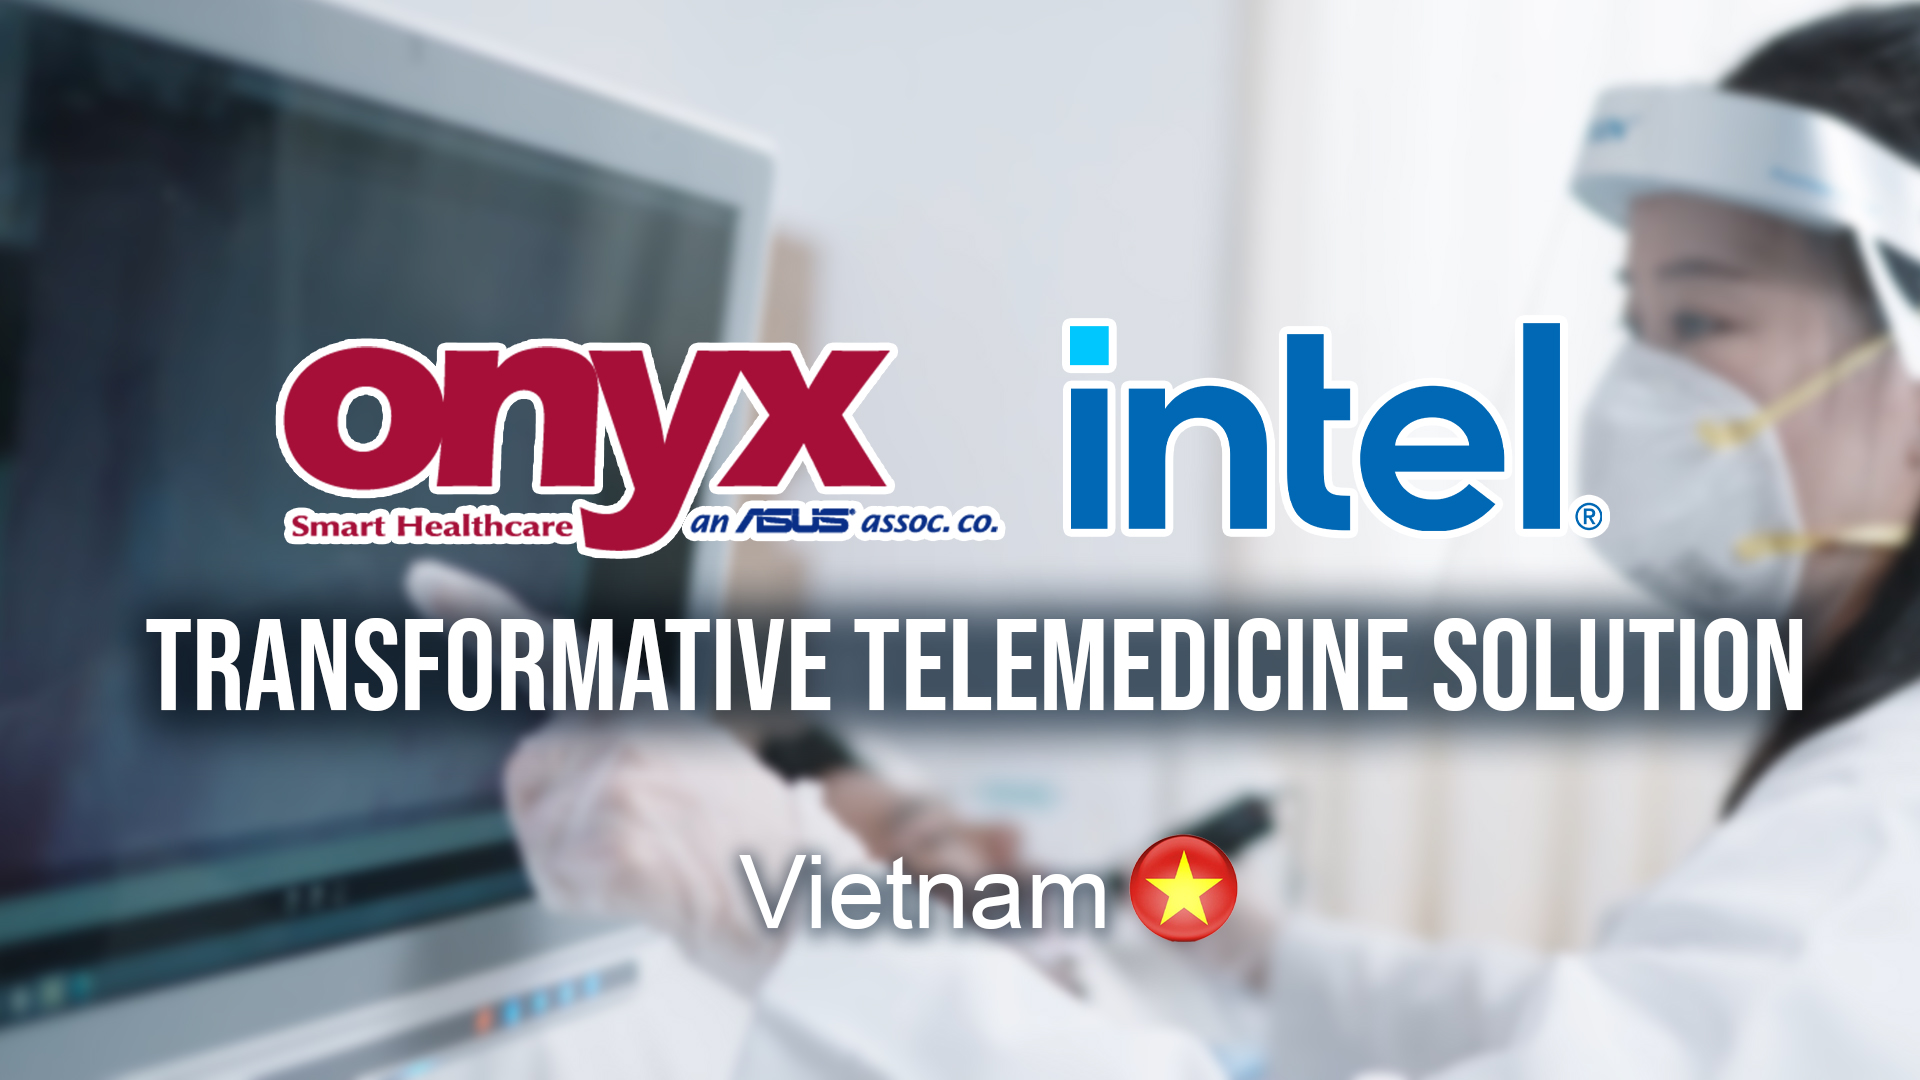 Onyx Healthcare + Intel® Deploy Transformative Telemedicine Solution in Vietnam